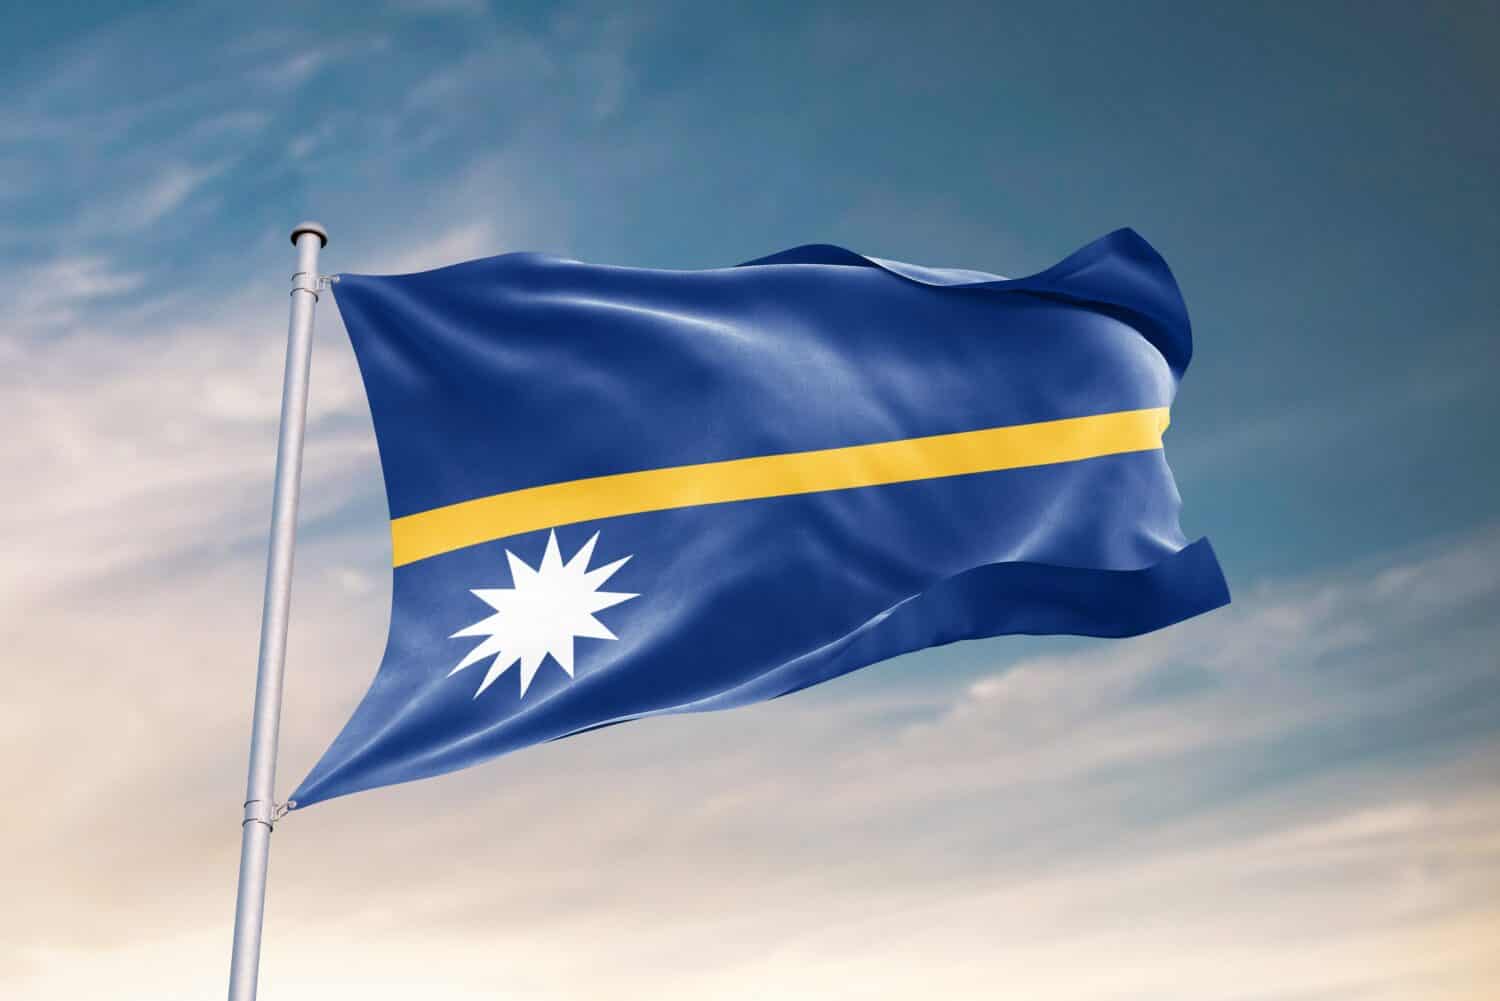 Sventola bandiera di Nauru nel bel cielo.  Bandiera Nauru per il giorno dell'indipendenza.  Il simbolo dello stato su tessuto ondulato.